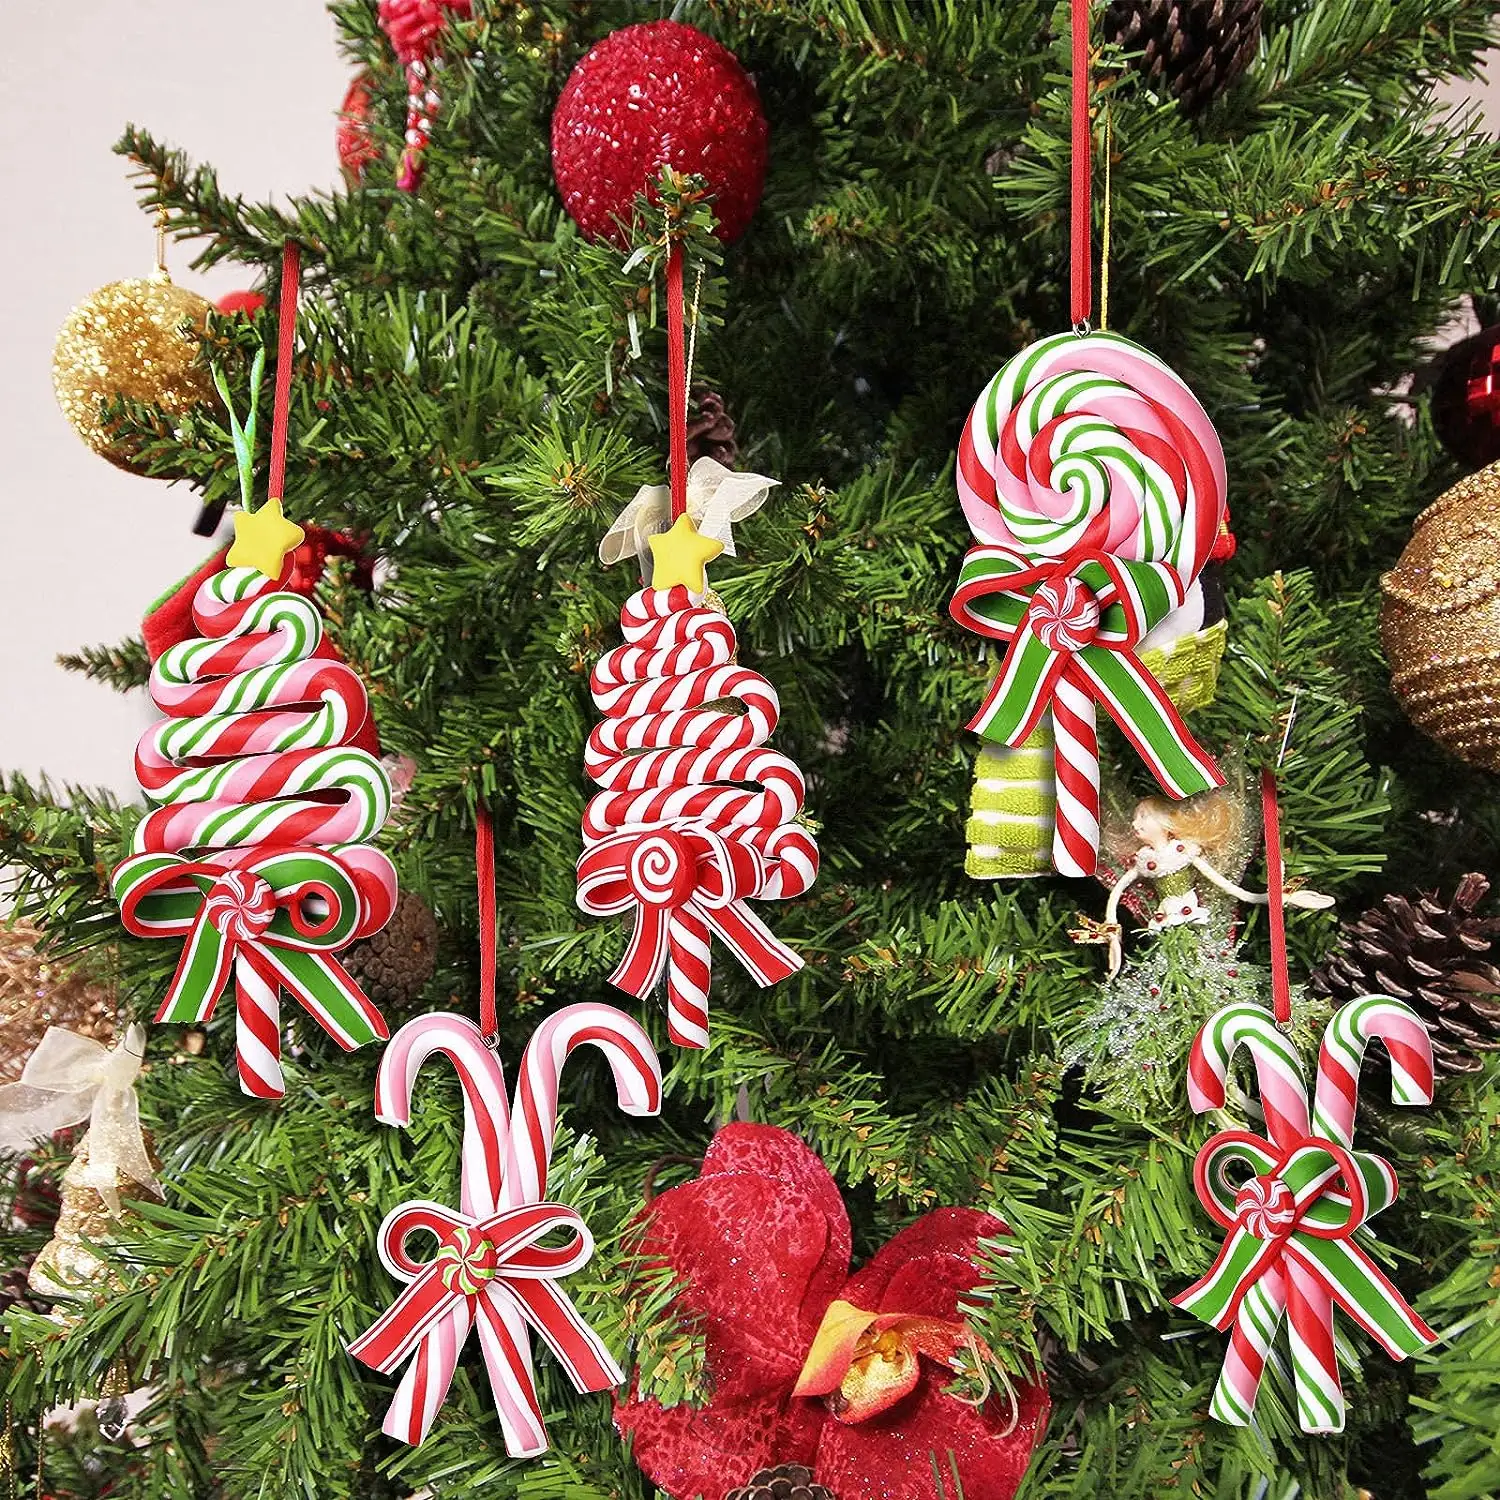 Décorations de fête à la maison décor d'arbre de Noël sucette de menthe poivrée rouge canne à sucre ornements suspendus ornements de bonbons de Noël